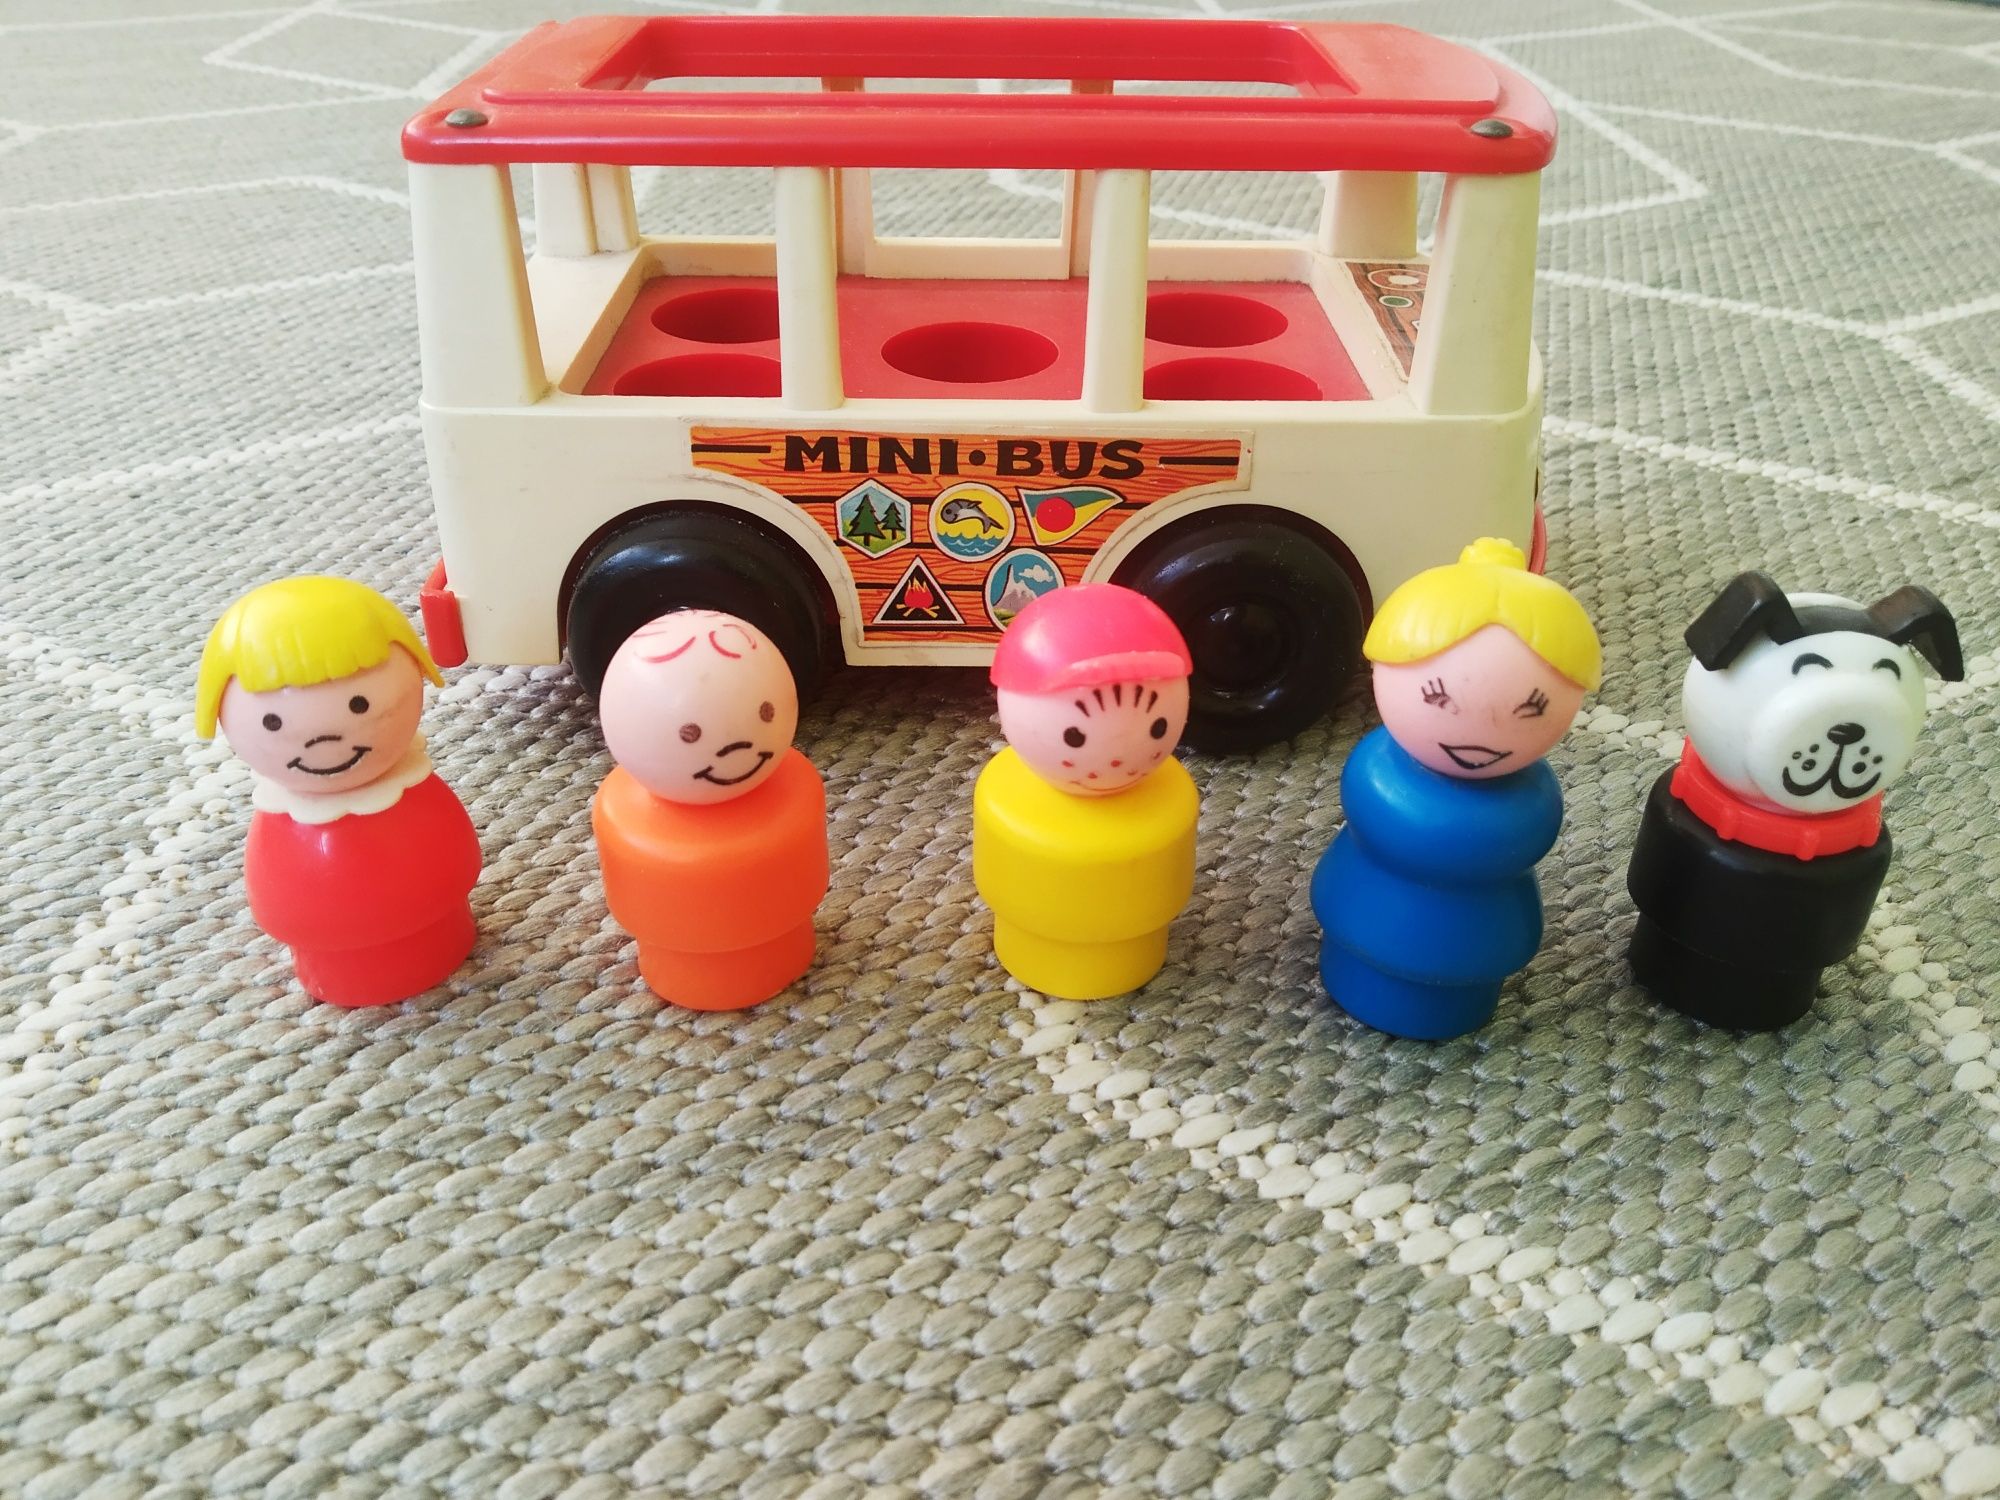 Mini bus Fischer Price 1969 r. - zabawka kolekcjonerska